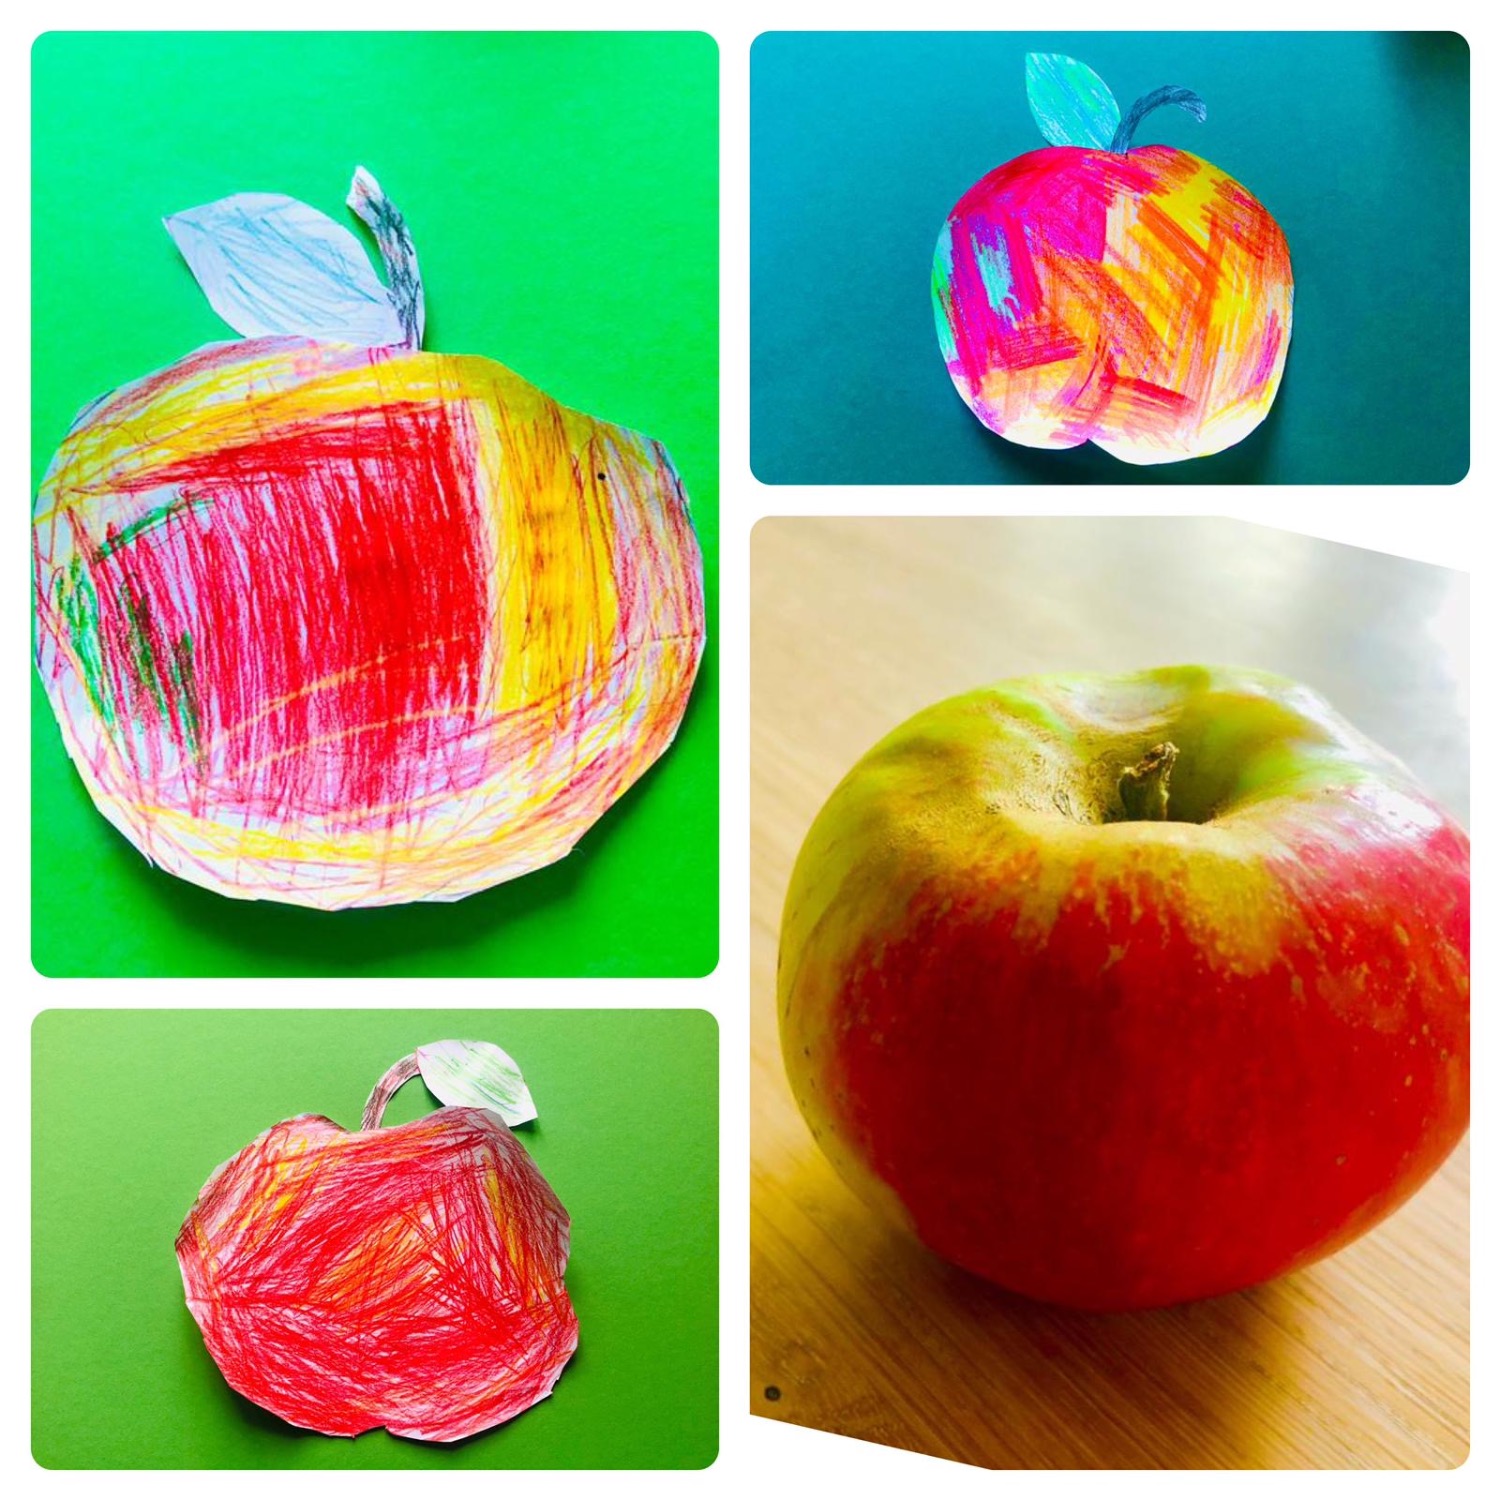 Titelbild zur Idee für die Beschäftigung mit Kindern '(414) Apfel malen – am Model'